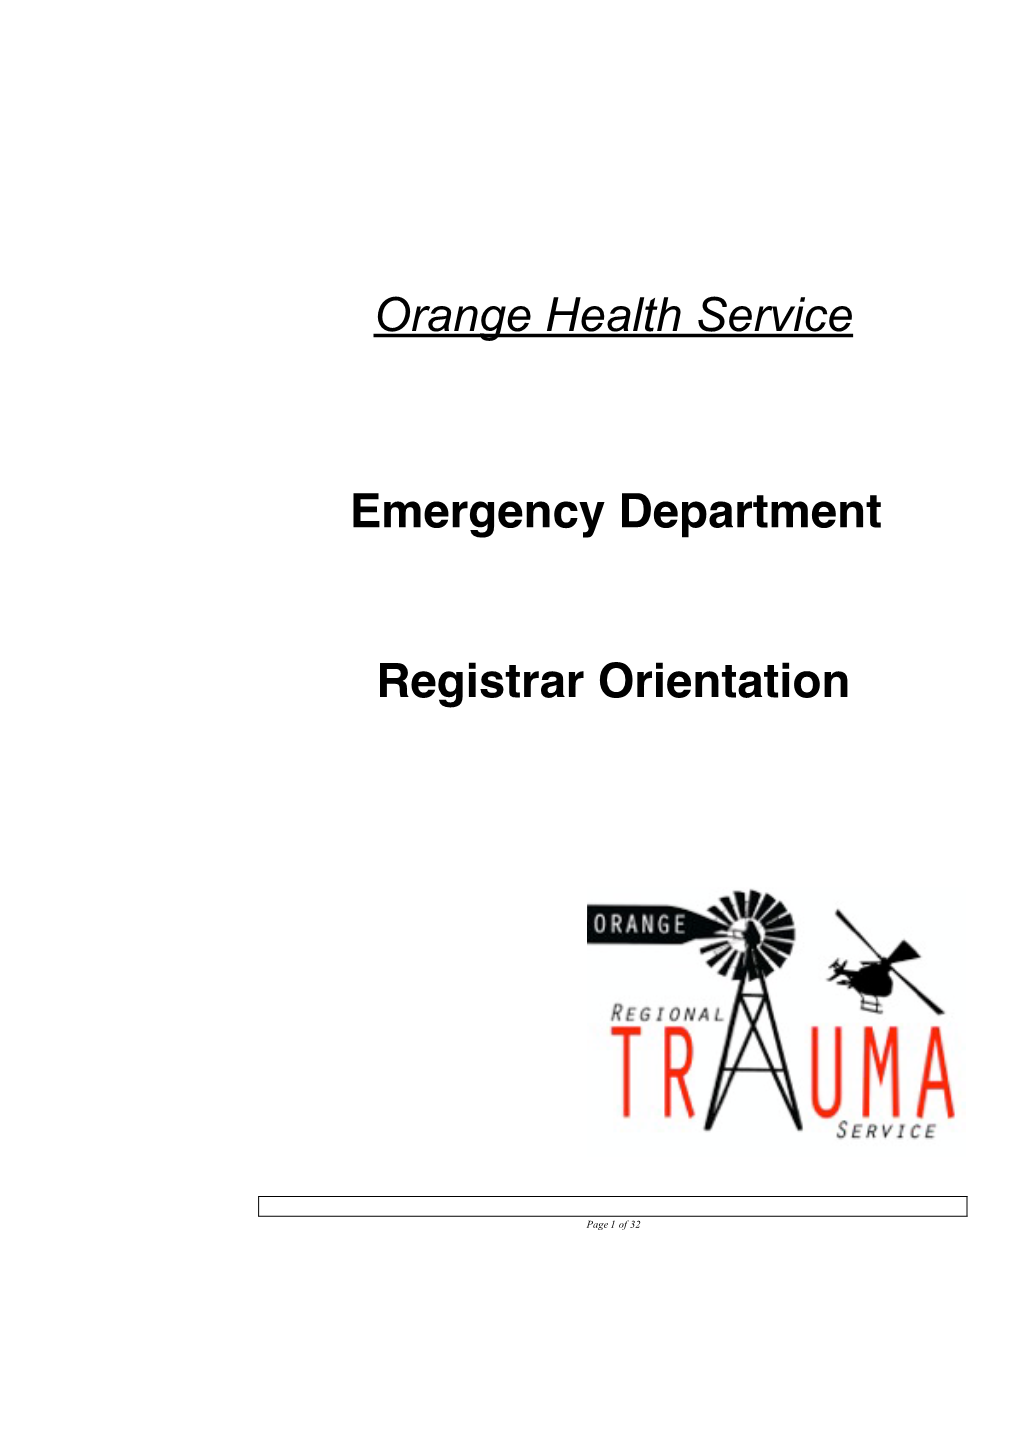 Orange Health Service Emergency Department Registrar Orientation